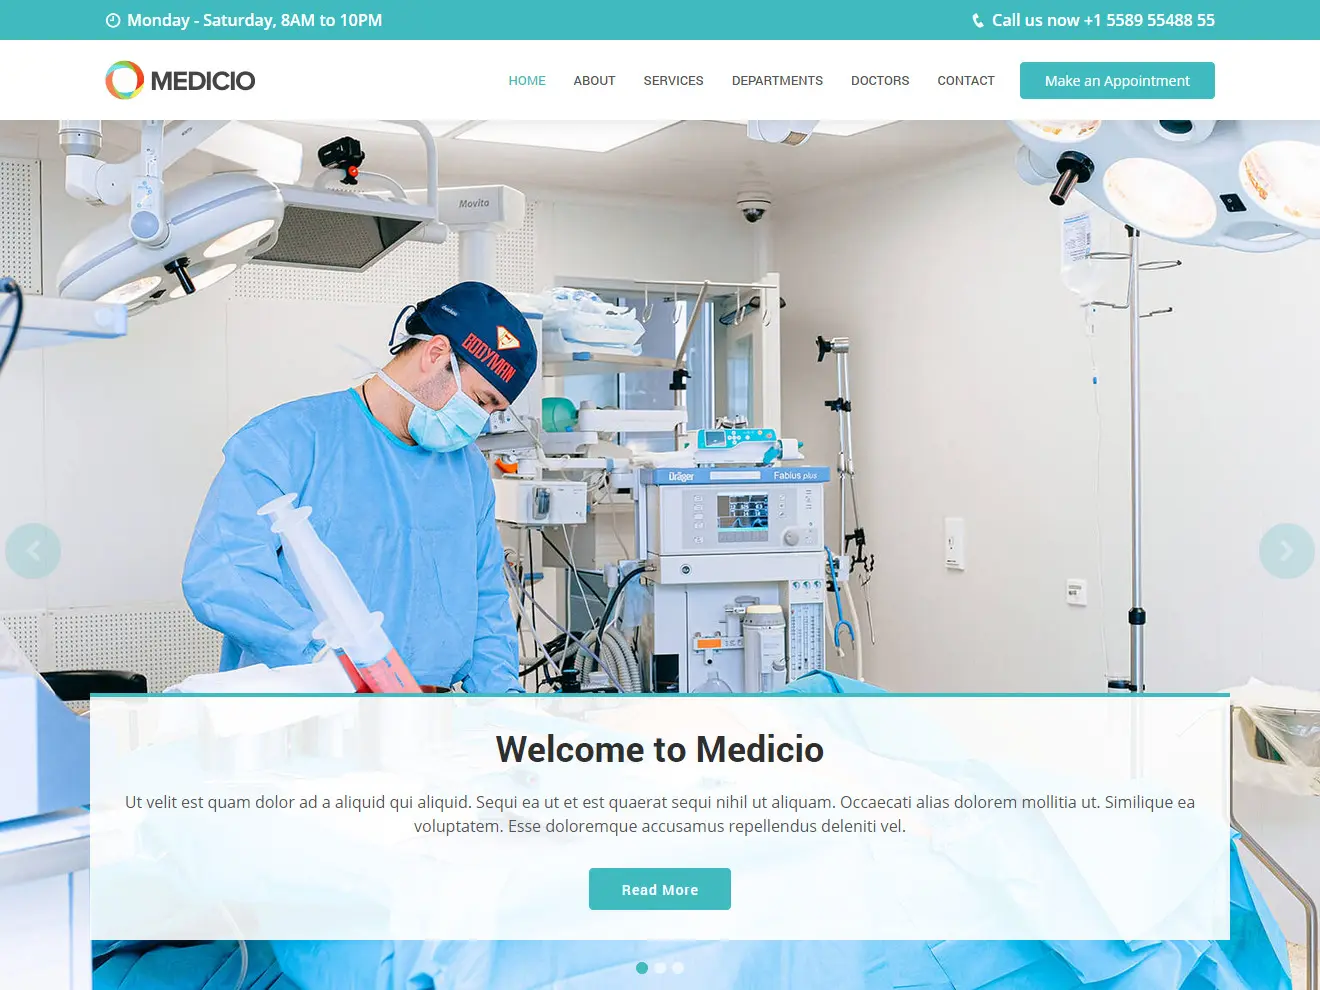 Medicio - Free Medical Template